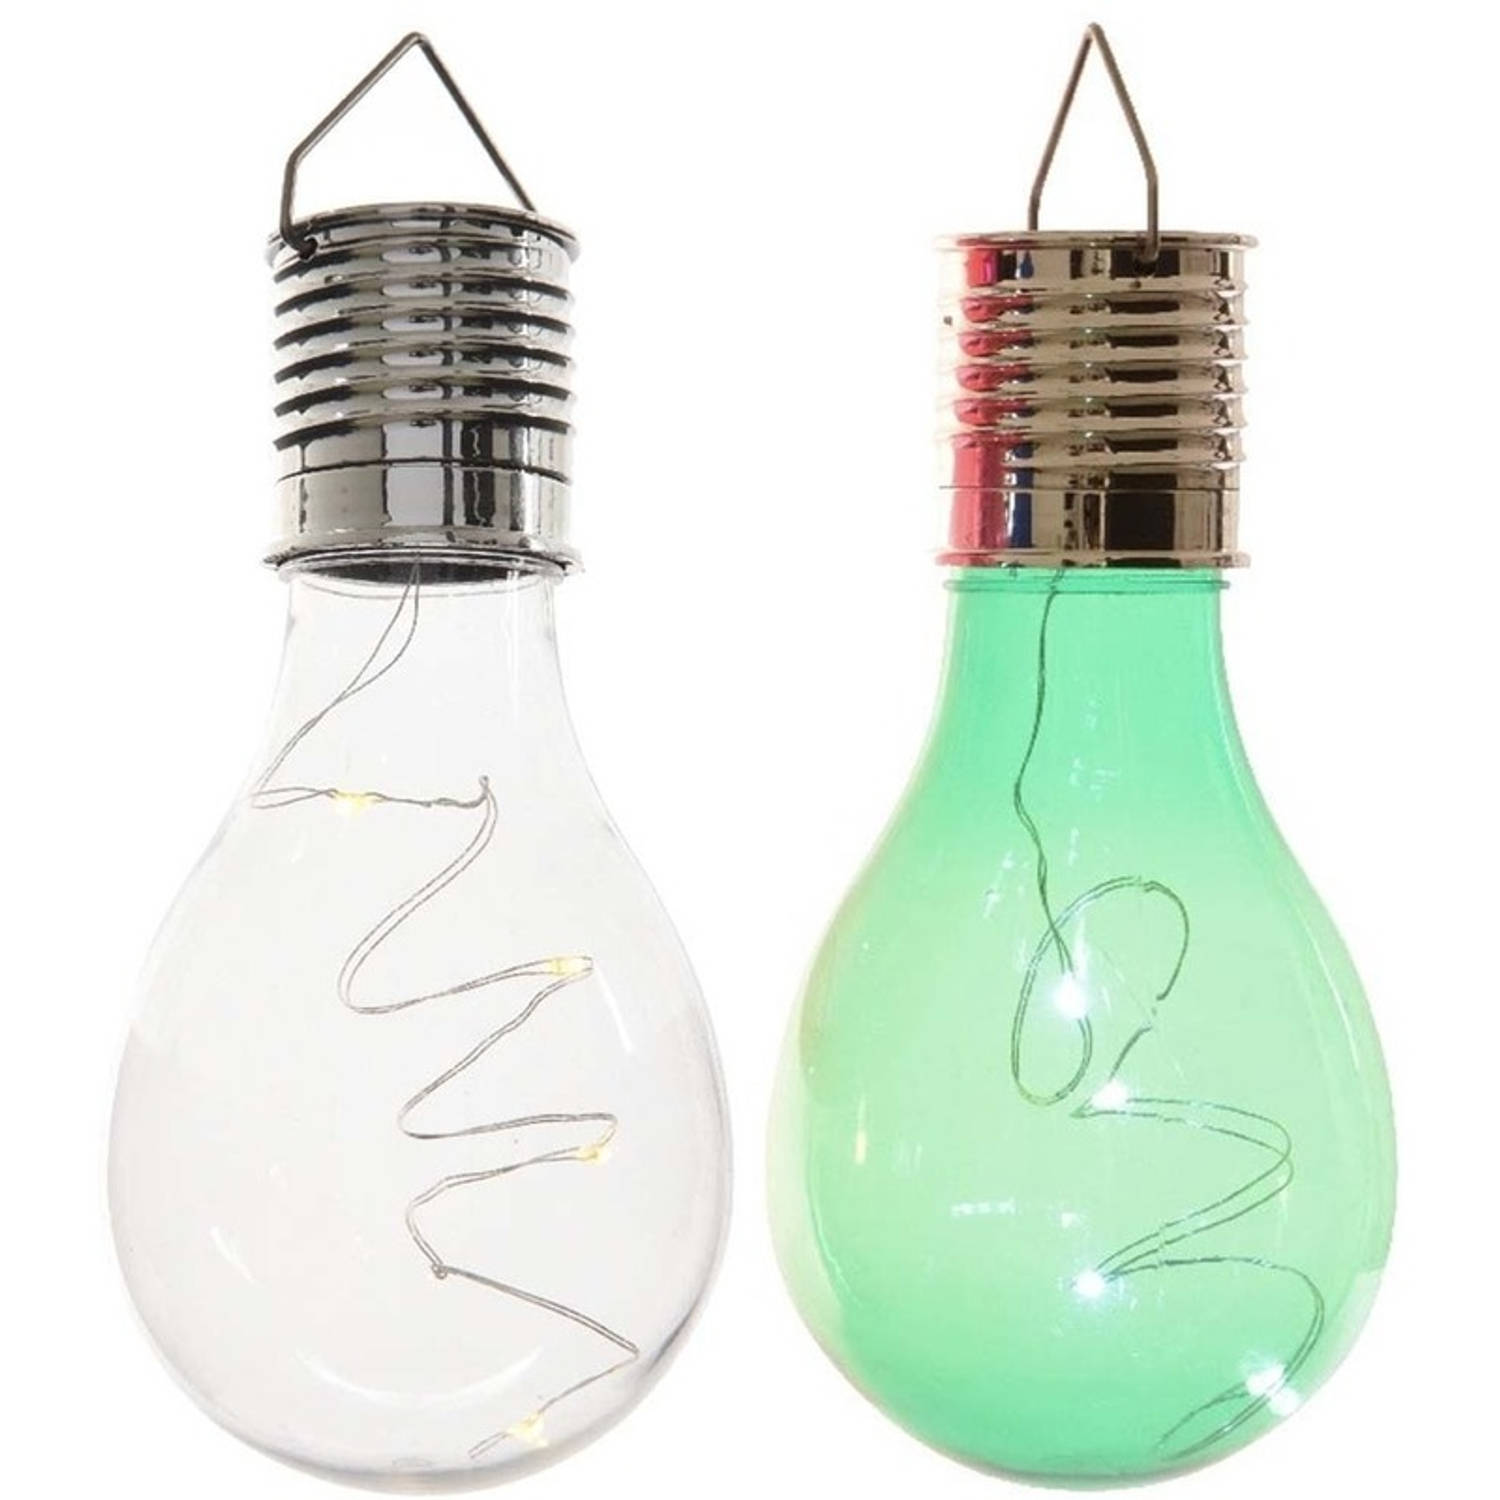 2x Buitenlampen-tuinlampen Lampbolletjes-peertjes 14 Cm Transparant-groen Buitenverlichting